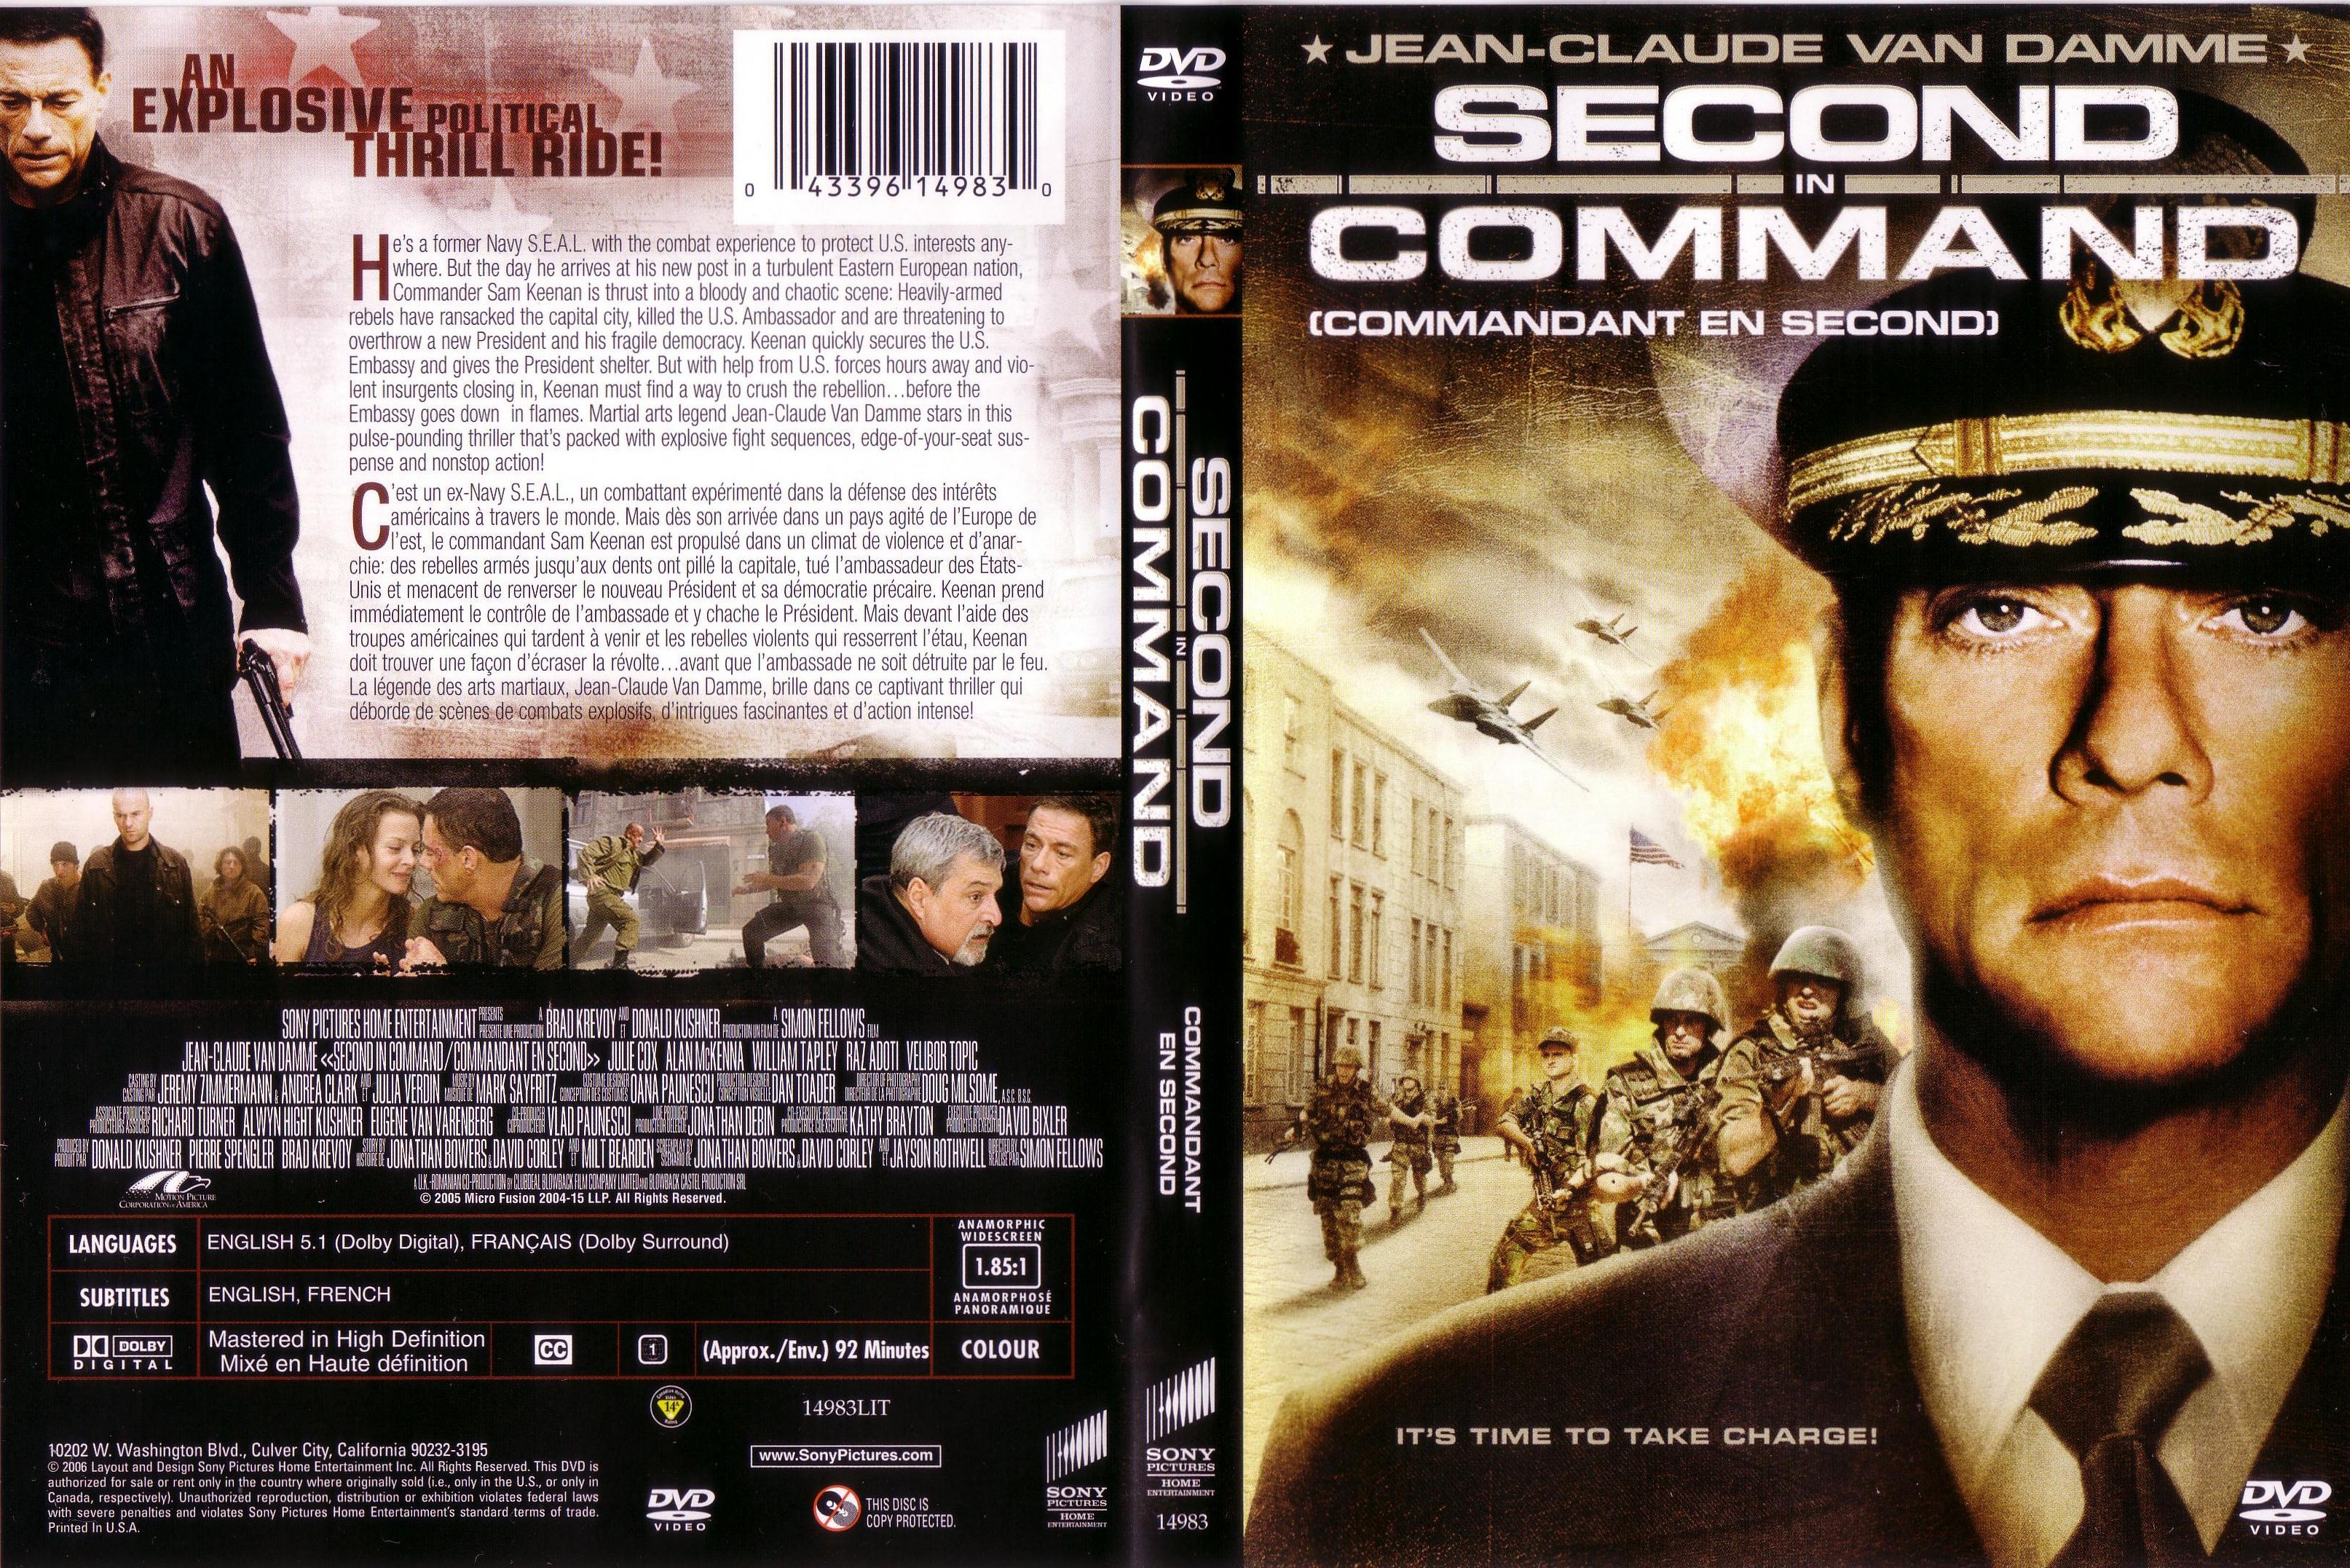 Jaquette DVD Commandant en second